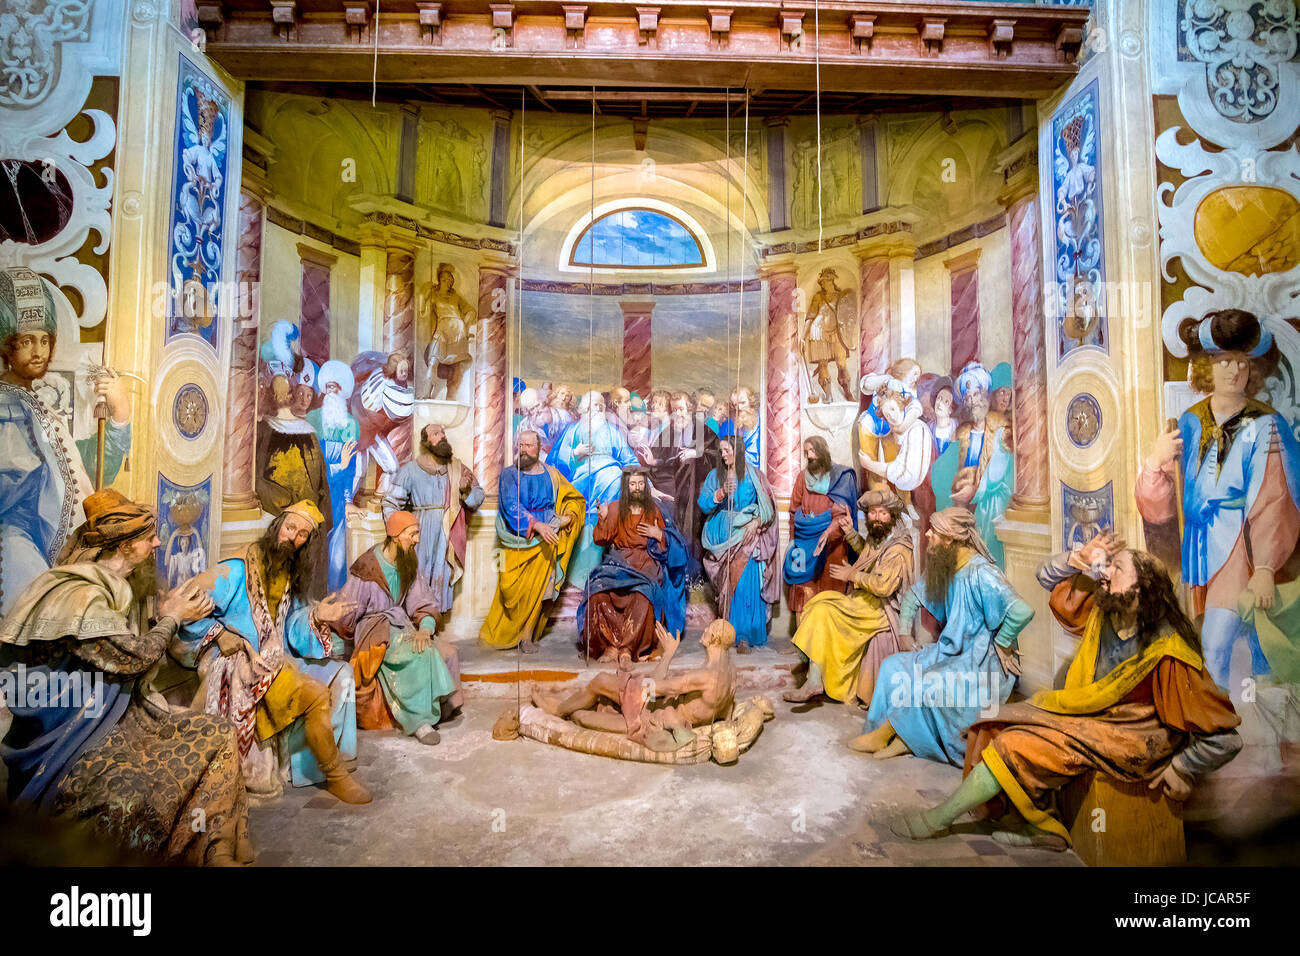 Varallo, Piemont, Italien, 24. Mai 2017 - biblische Szene Zeichendarstellung Jesu Christi macht ein Wunder Heilung eines Gelähmten Stockfoto